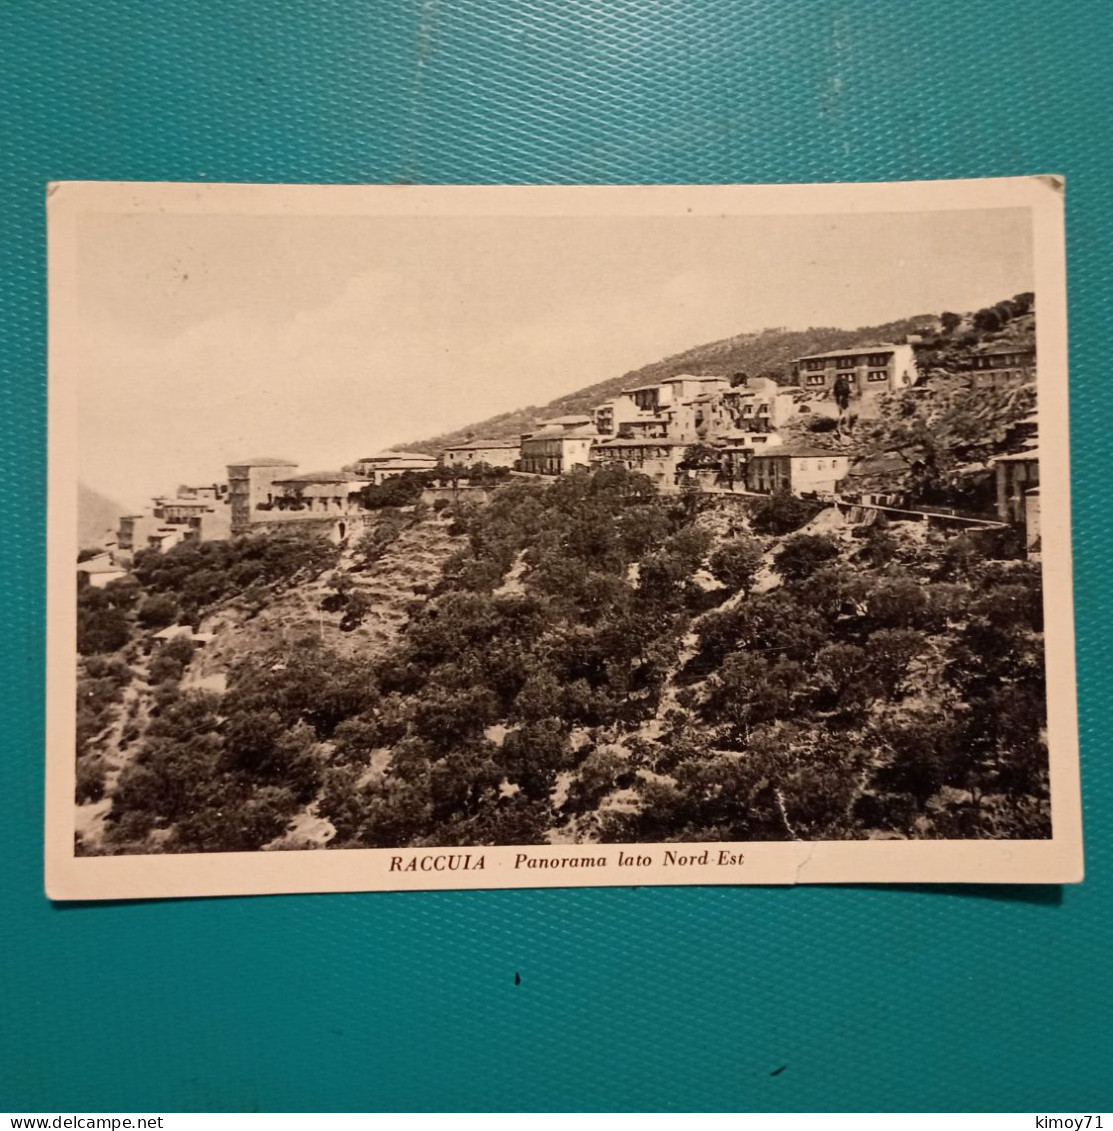 Cartolina Raccuia - Panorama LatoNord Est. Viaggiata 1960 - Messina